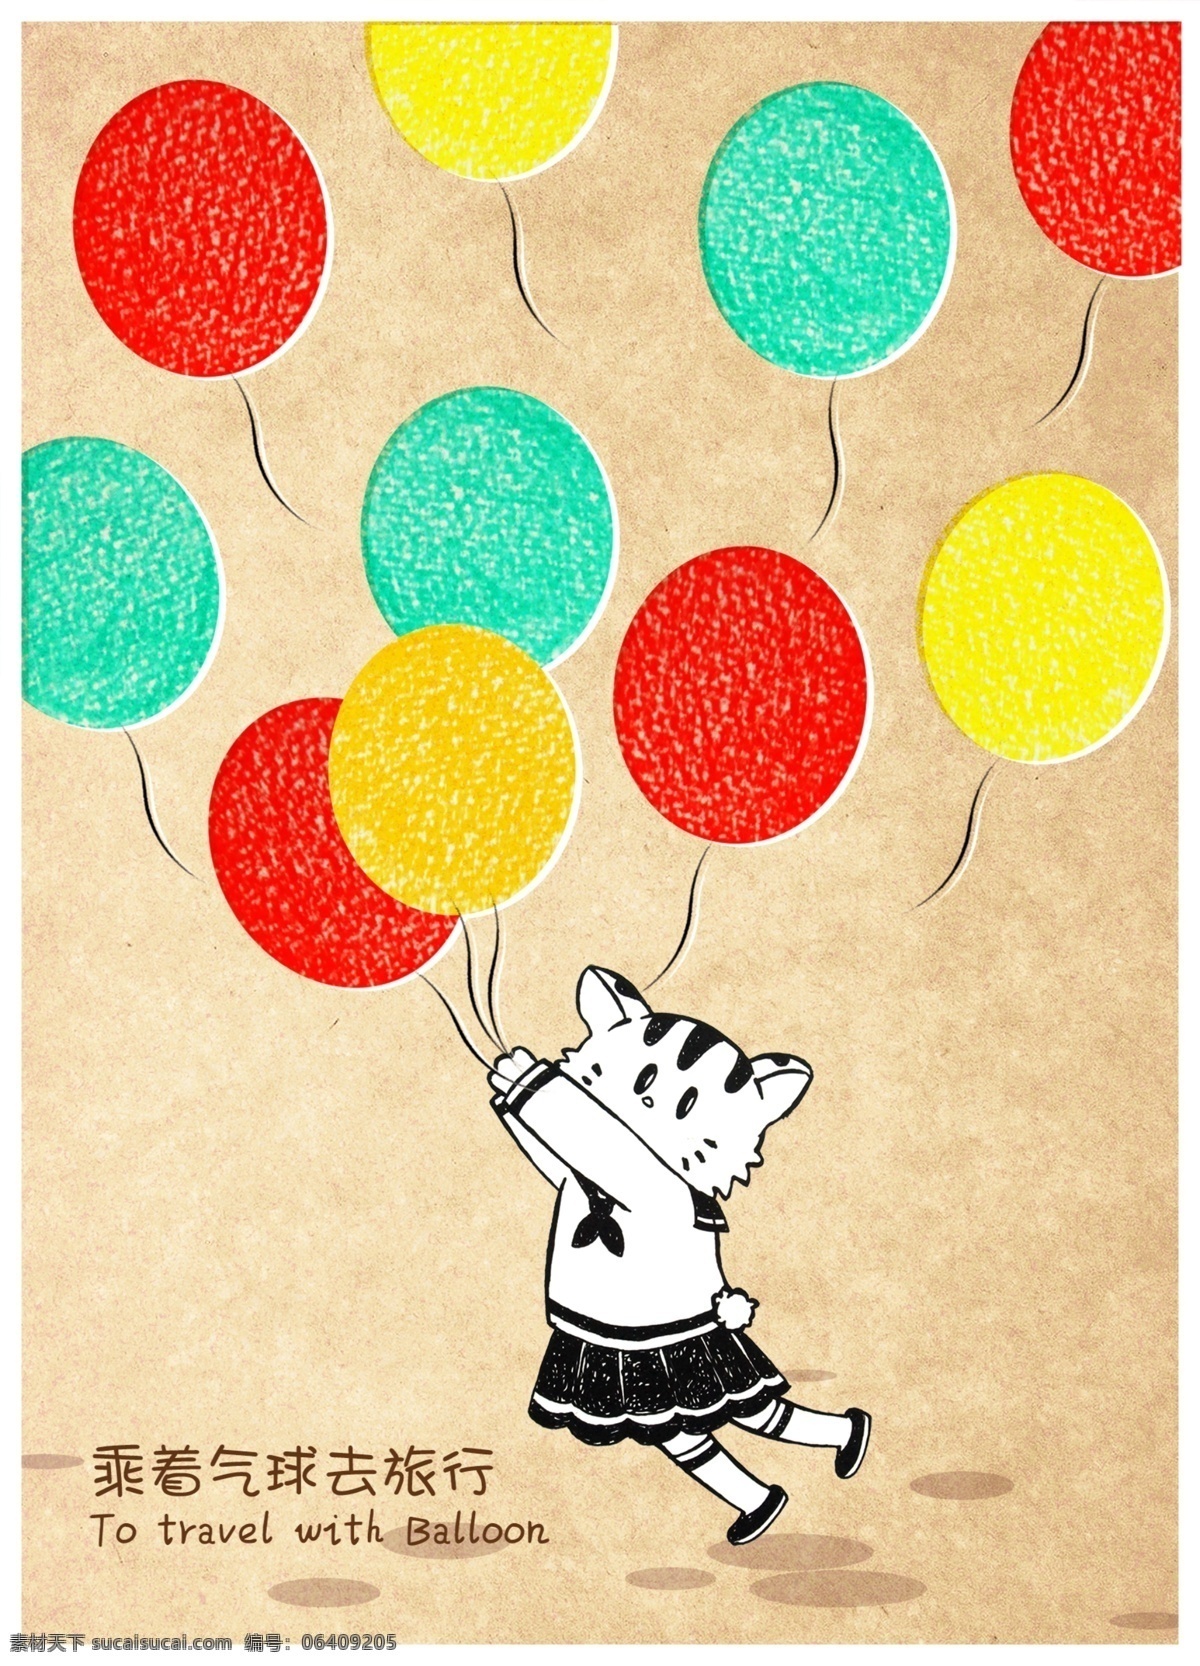 蜡笔 涂鸦 制作 个性 海报 蜡笔涂鸦制 小猫和气球 小猫 猫咪 气球